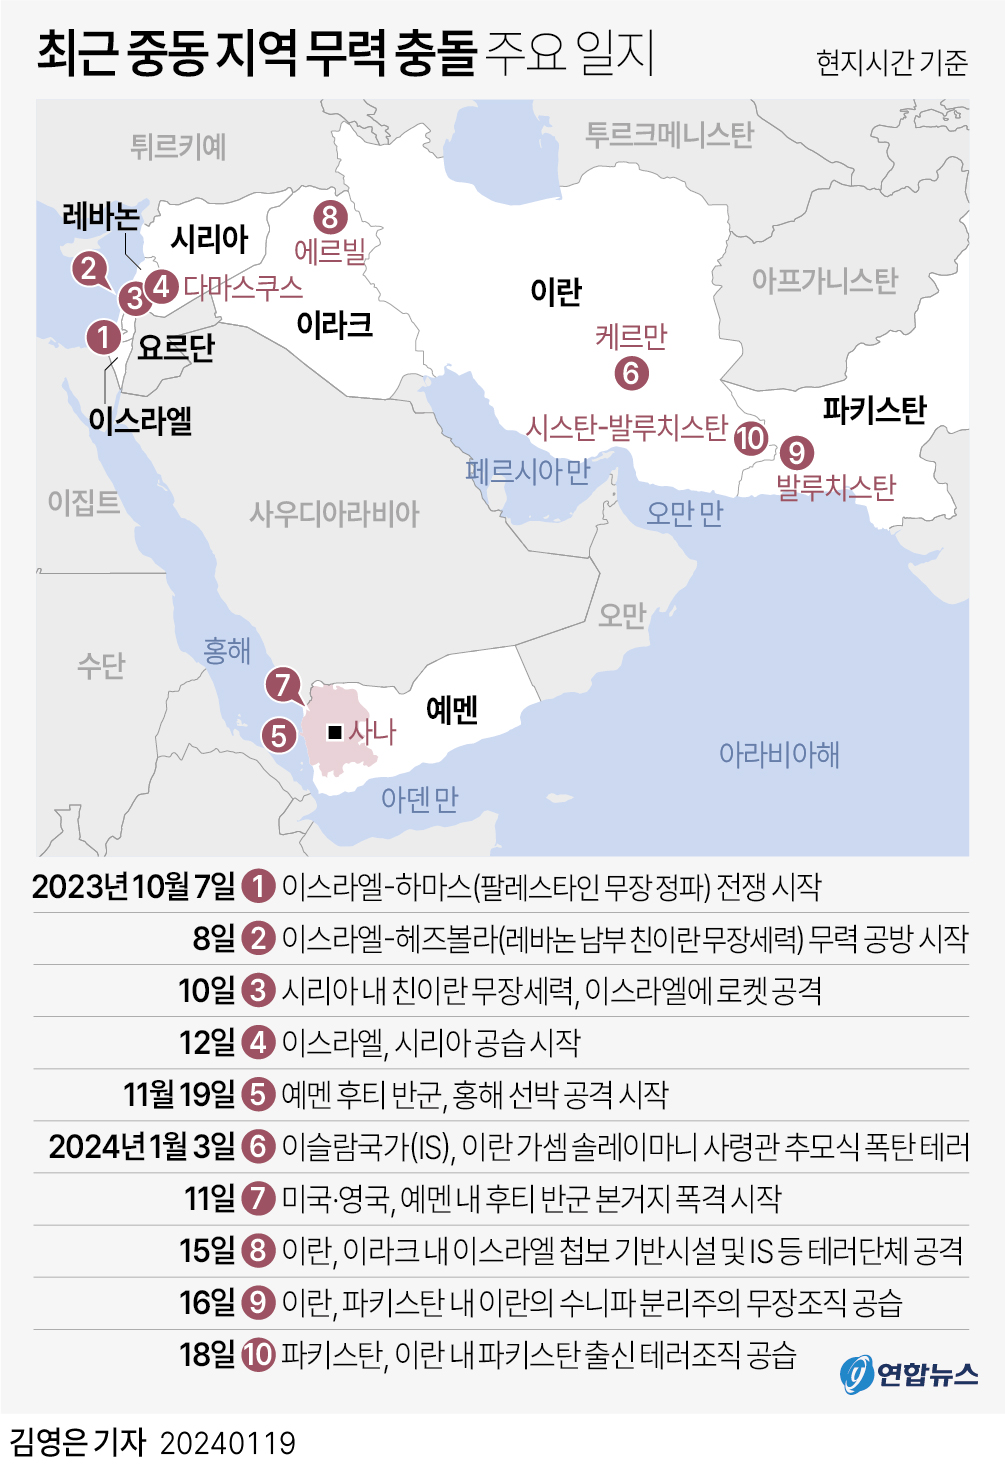 [그래픽] 최근 중동 지역 무력 충돌 주요 일지